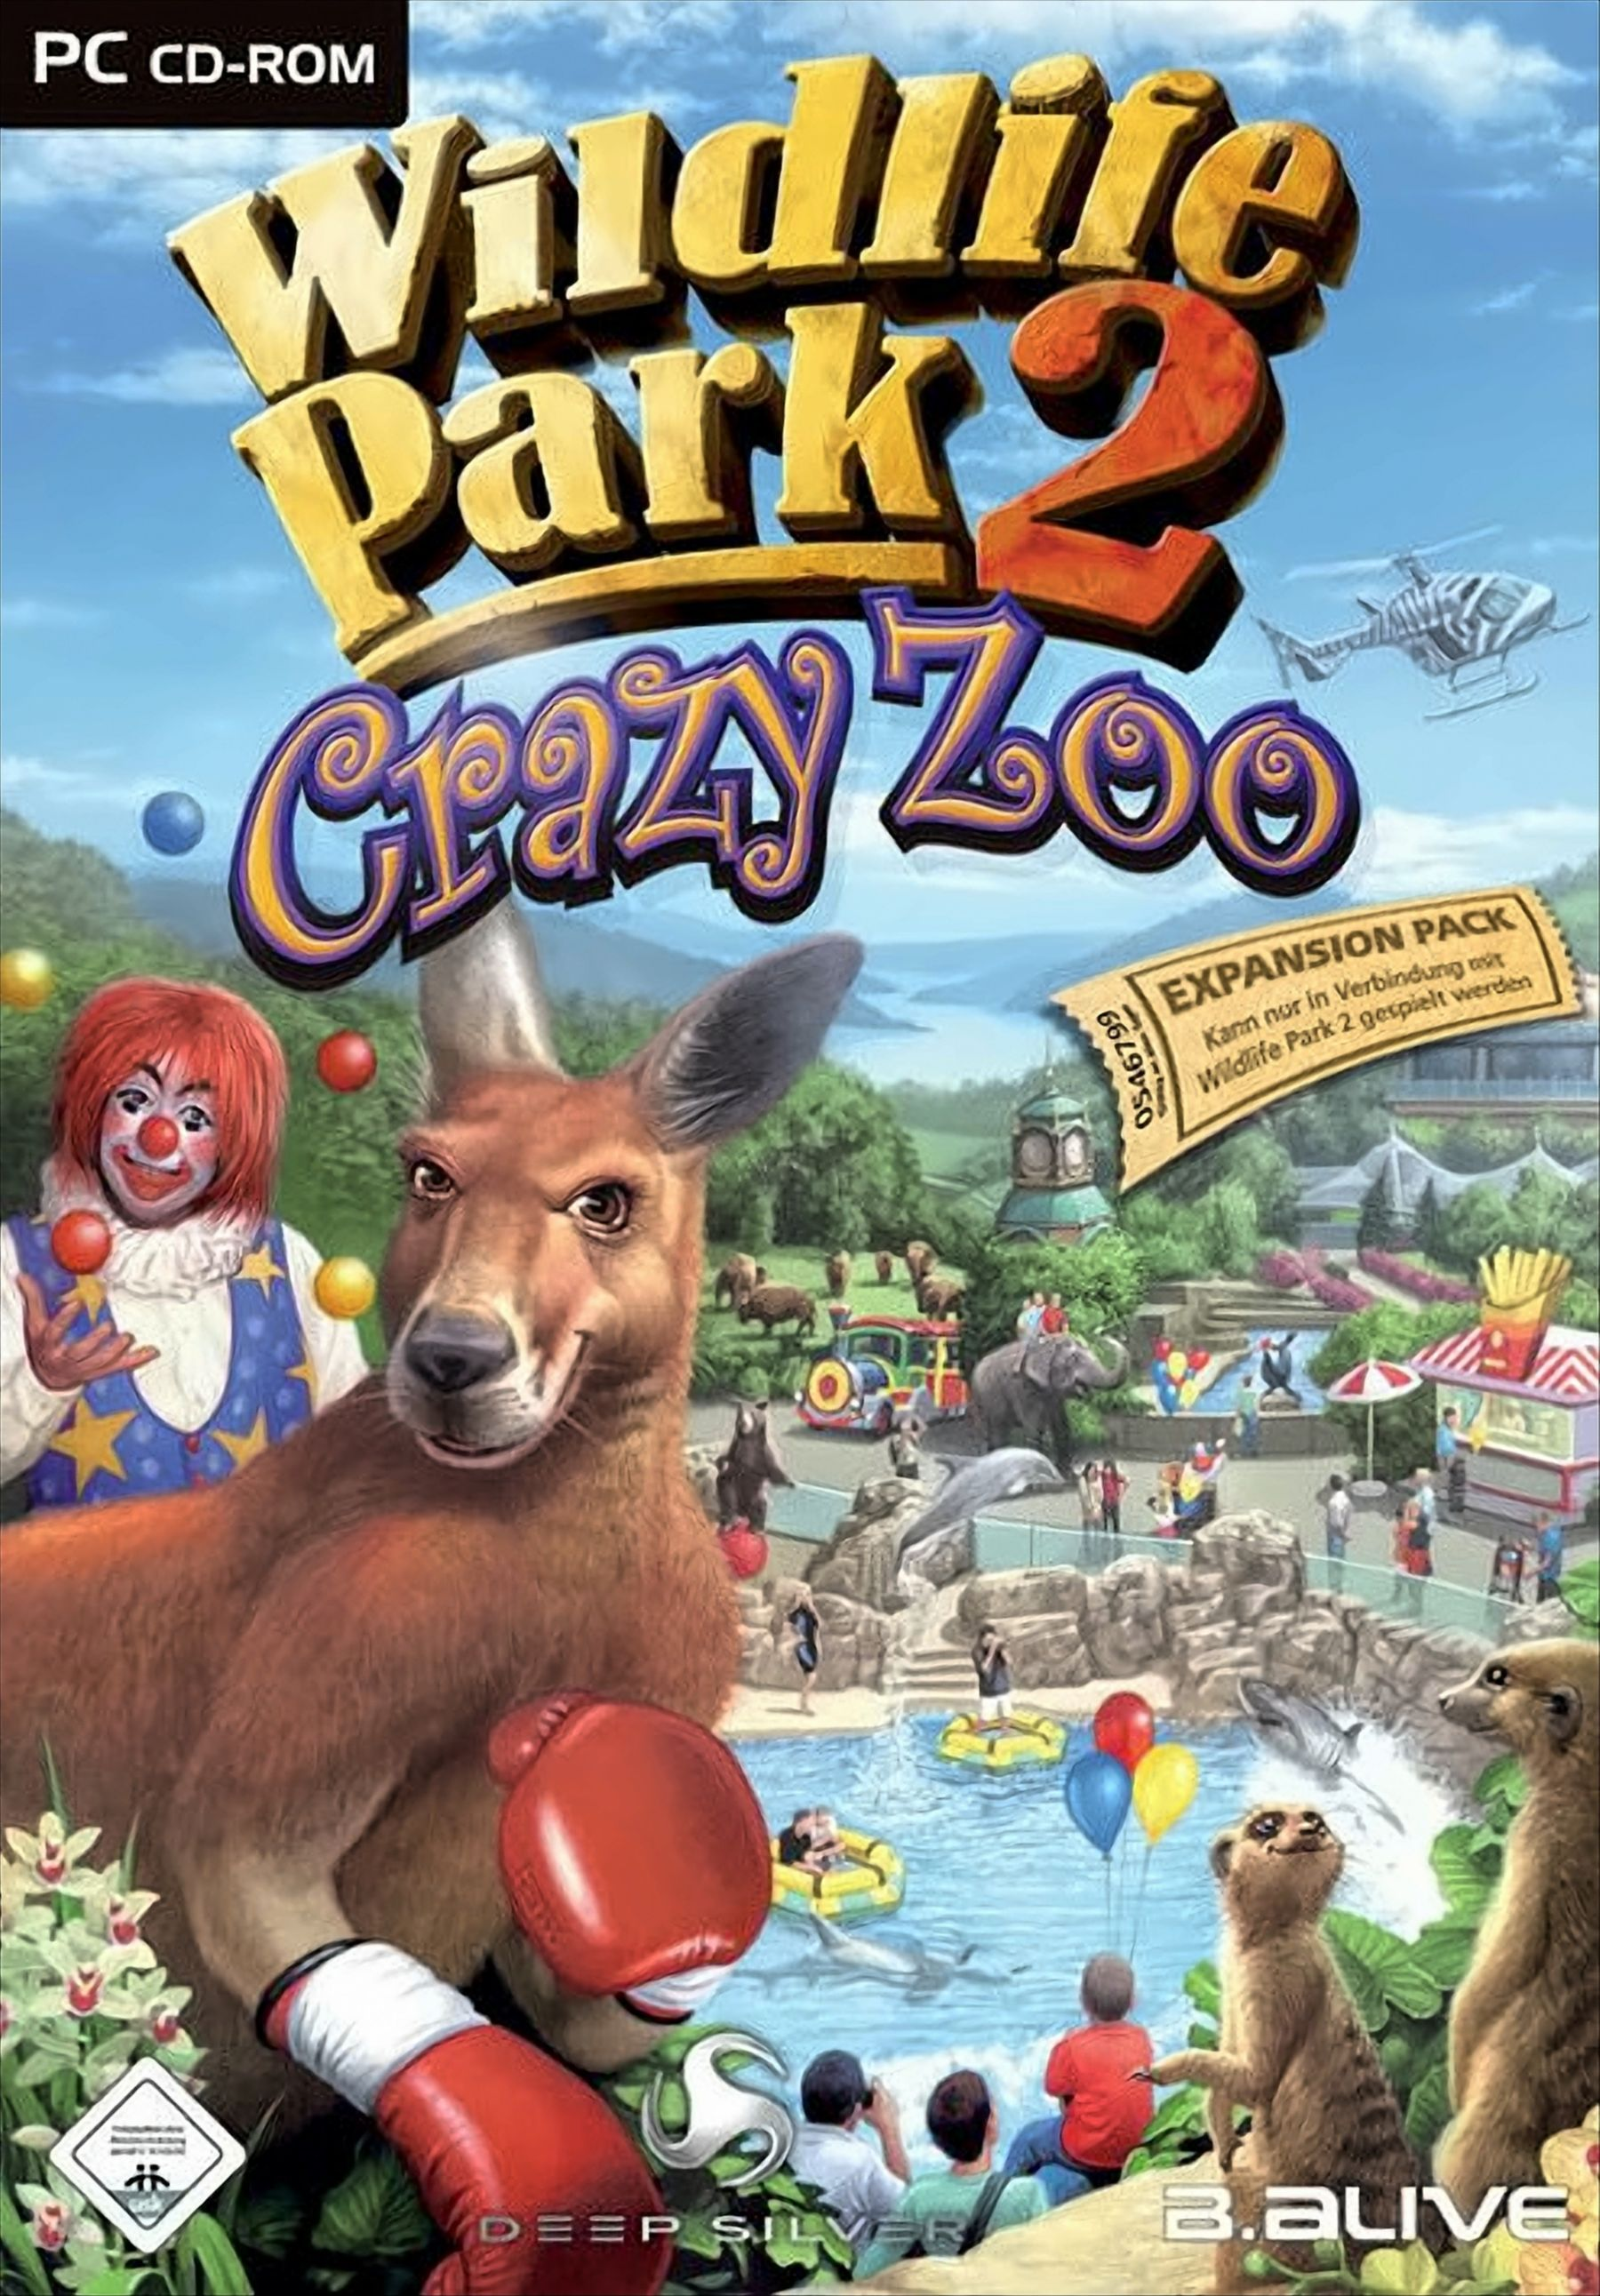 Park 2: Crazy [PC] Zoo Wildlife -